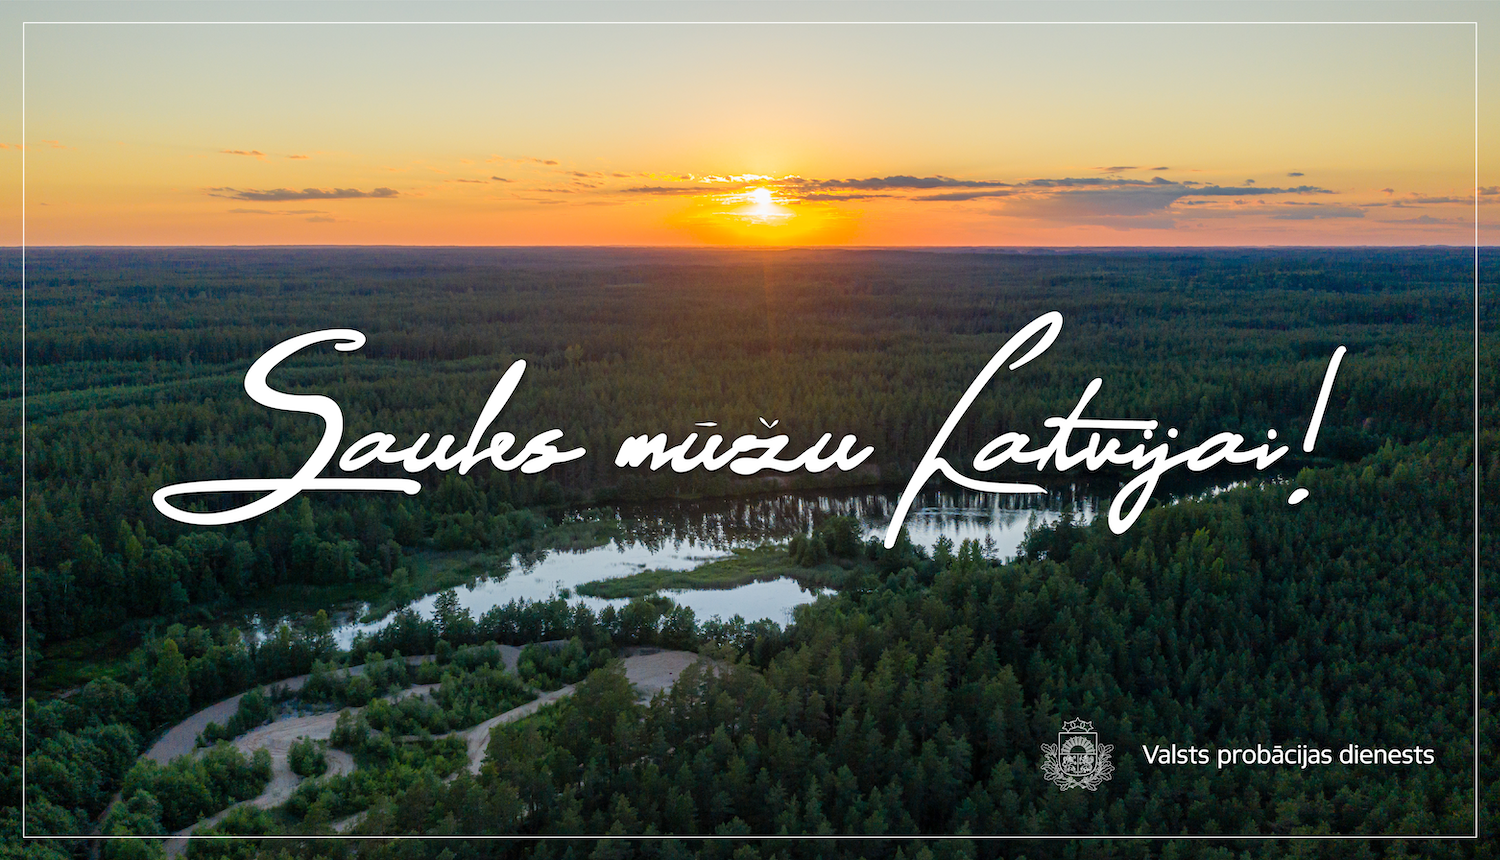 Valsts probācijas dienesta apsveikums Latvijas neatkarības dienā